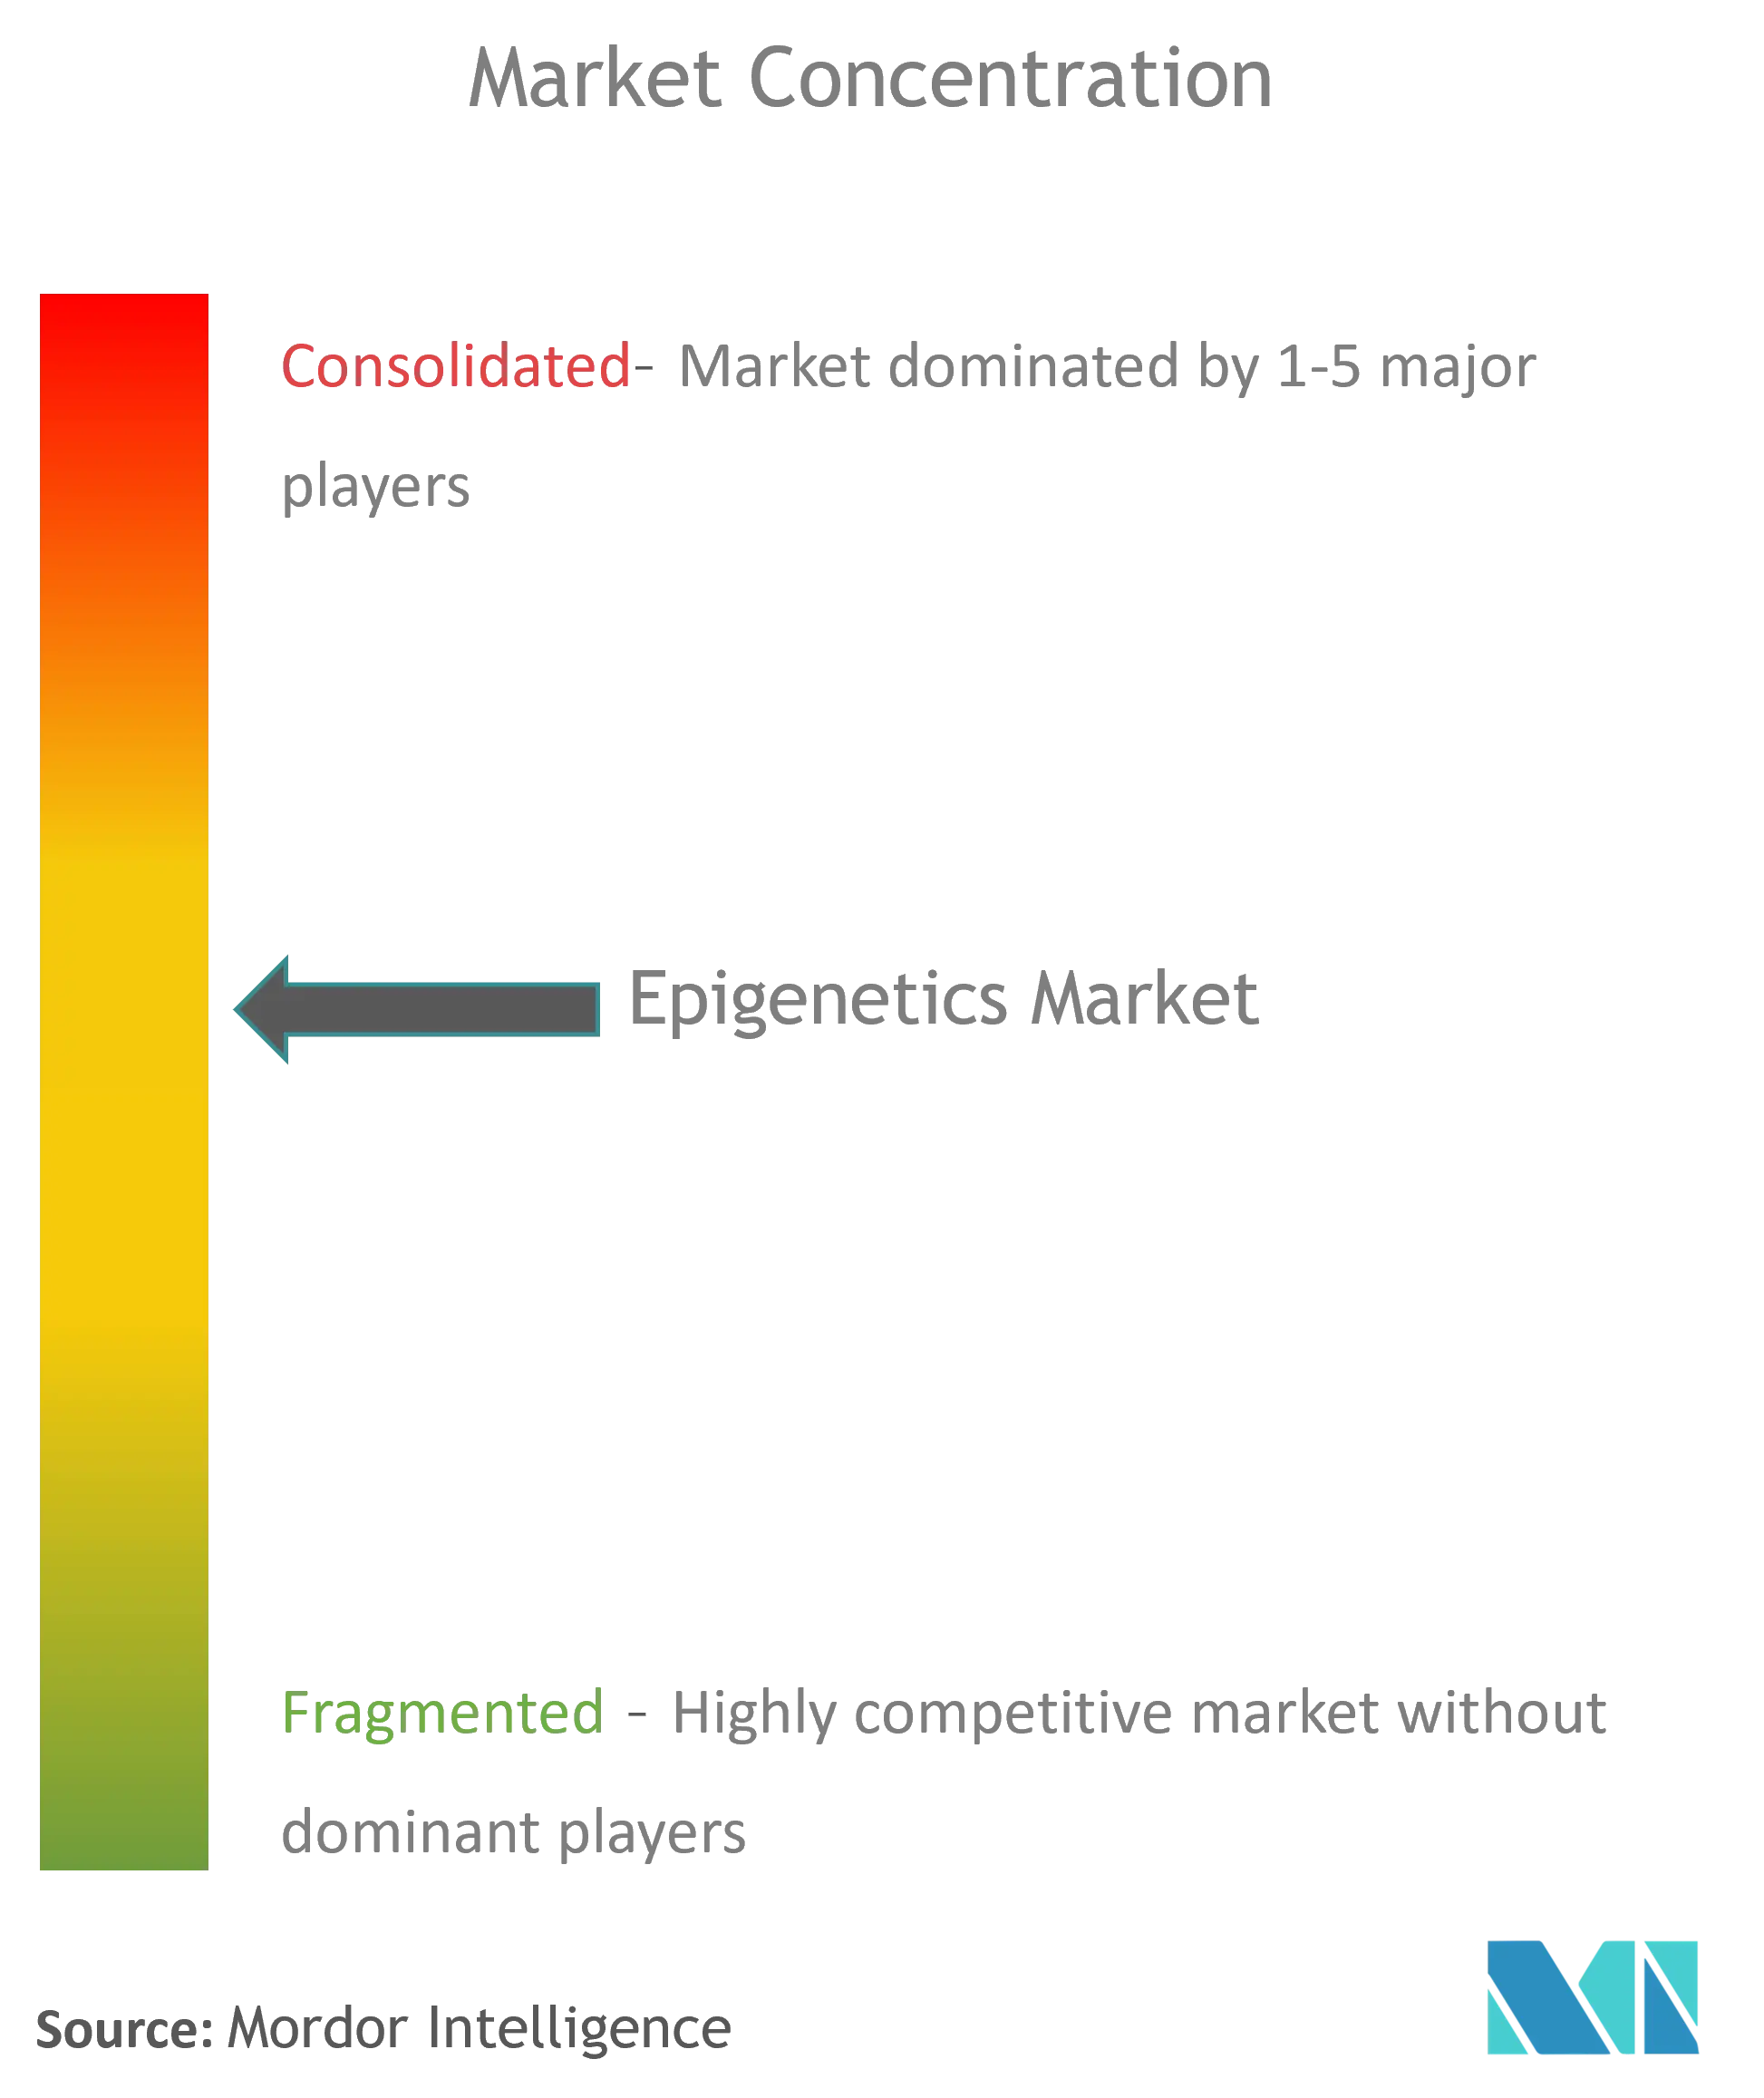 Epigenetics Market Concentration